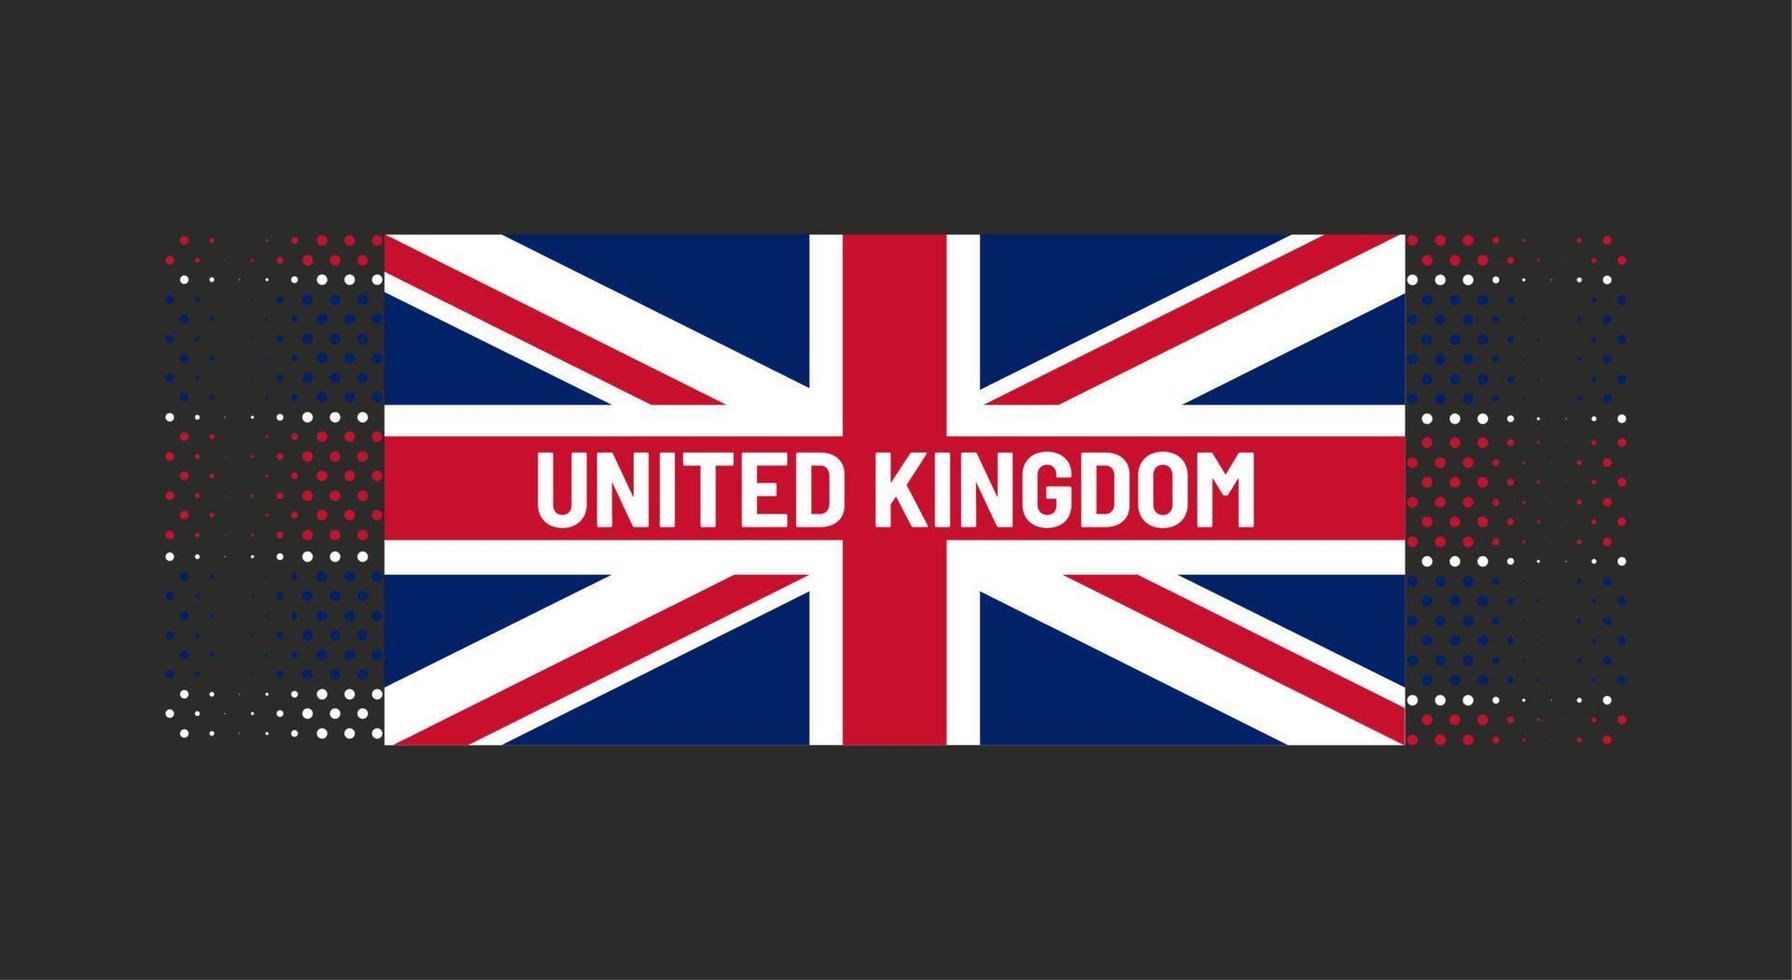 ilustración vectorial de la bandera del reino unido con palabras reino unido sobre fondo negro. telón de fondo punteado. colores azul, rojo, blanco. vector